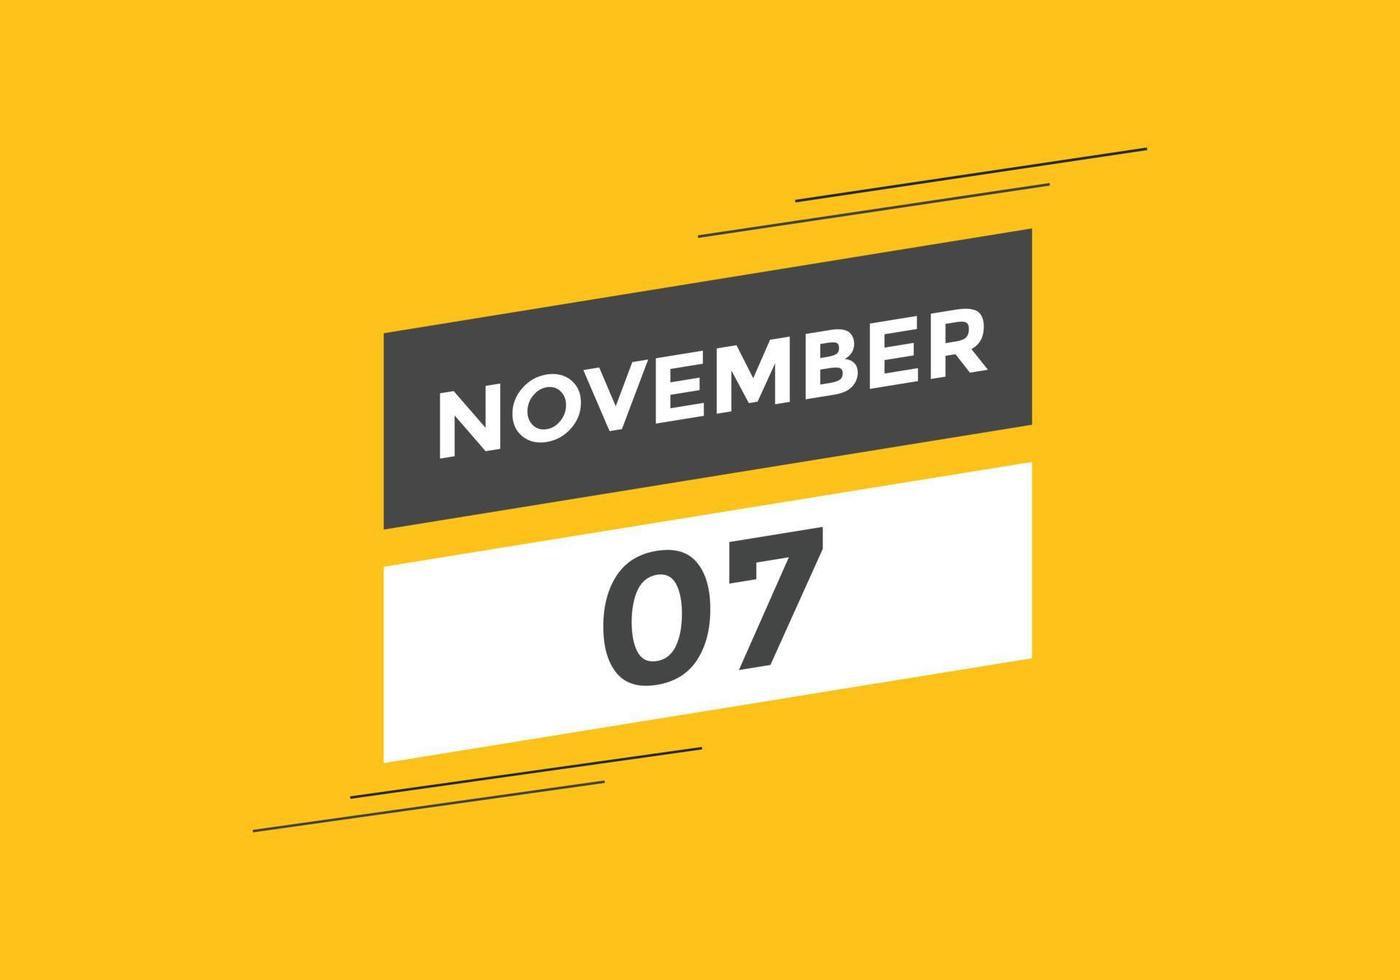 Recordatorio del calendario del 7 de noviembre. Plantilla de icono de calendario diario del 7 de noviembre. plantilla de diseño de icono de calendario 7 de noviembre. ilustración vectorial vector